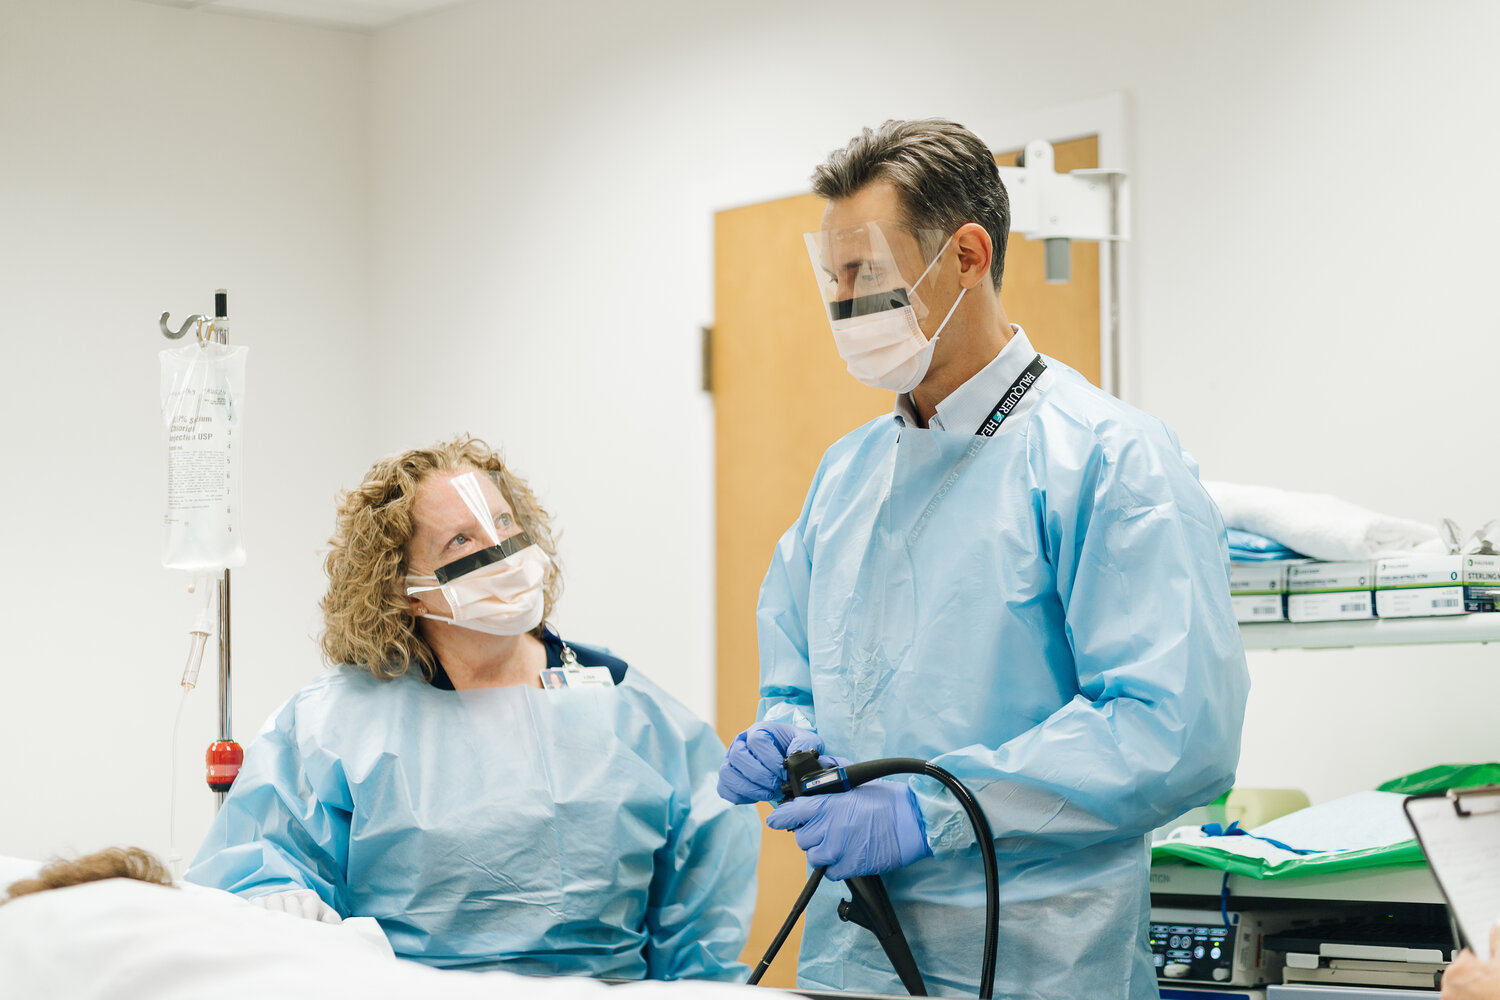 Dr. Ivan Harnden prepares in the endoscopy suite.